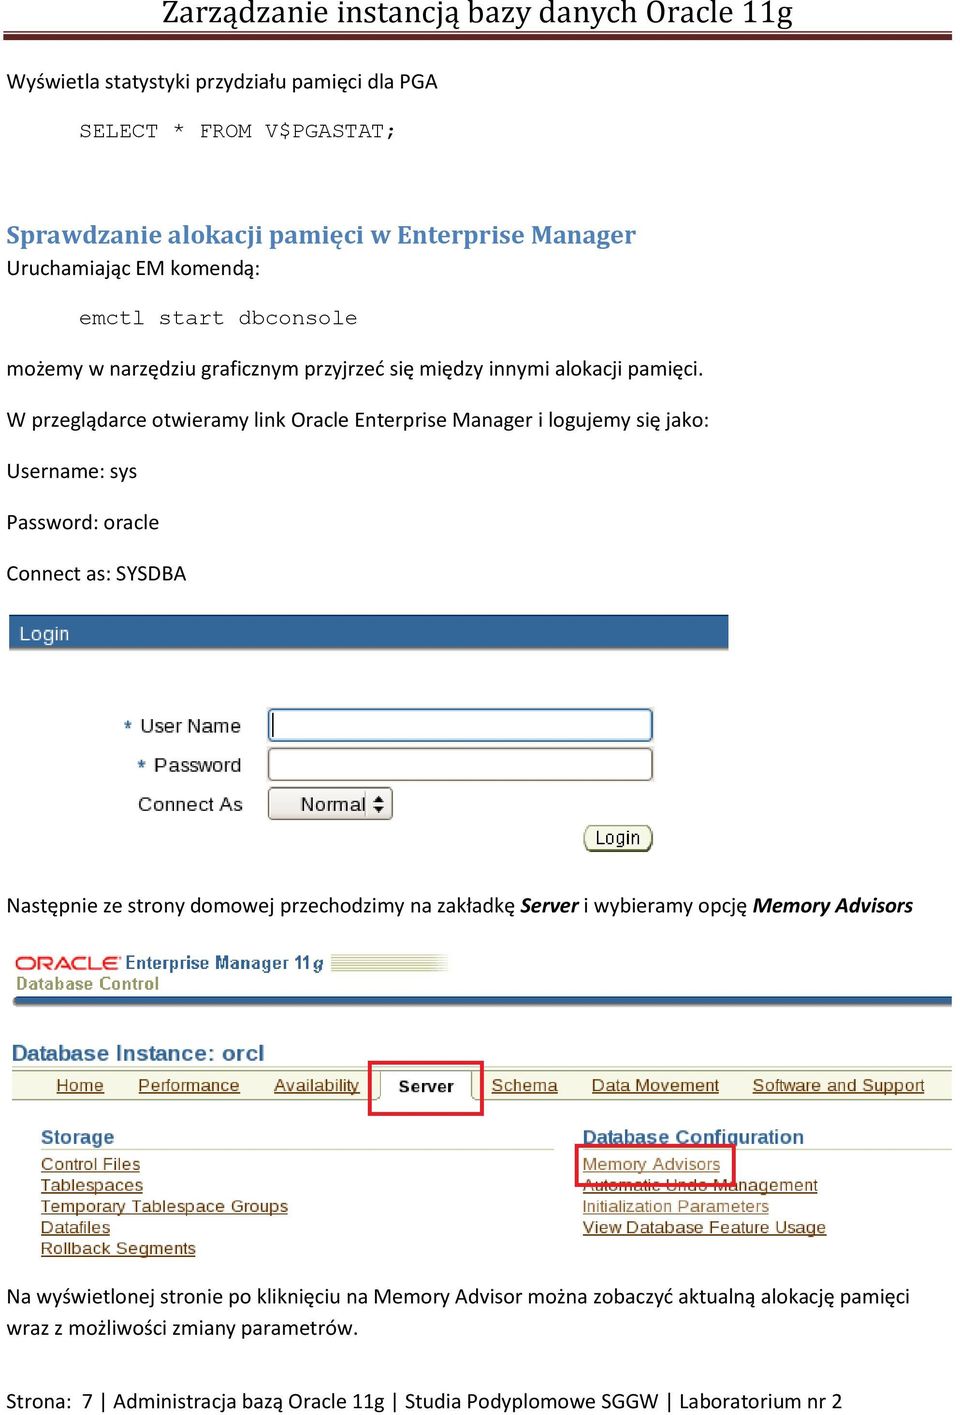 W przeglądarce otwieramy link Oracle Enterprise Manager i logujemy się jako: Username: sys Password: oracle Connect as: SYSDBA Następnie ze strony domowej przechodzimy na